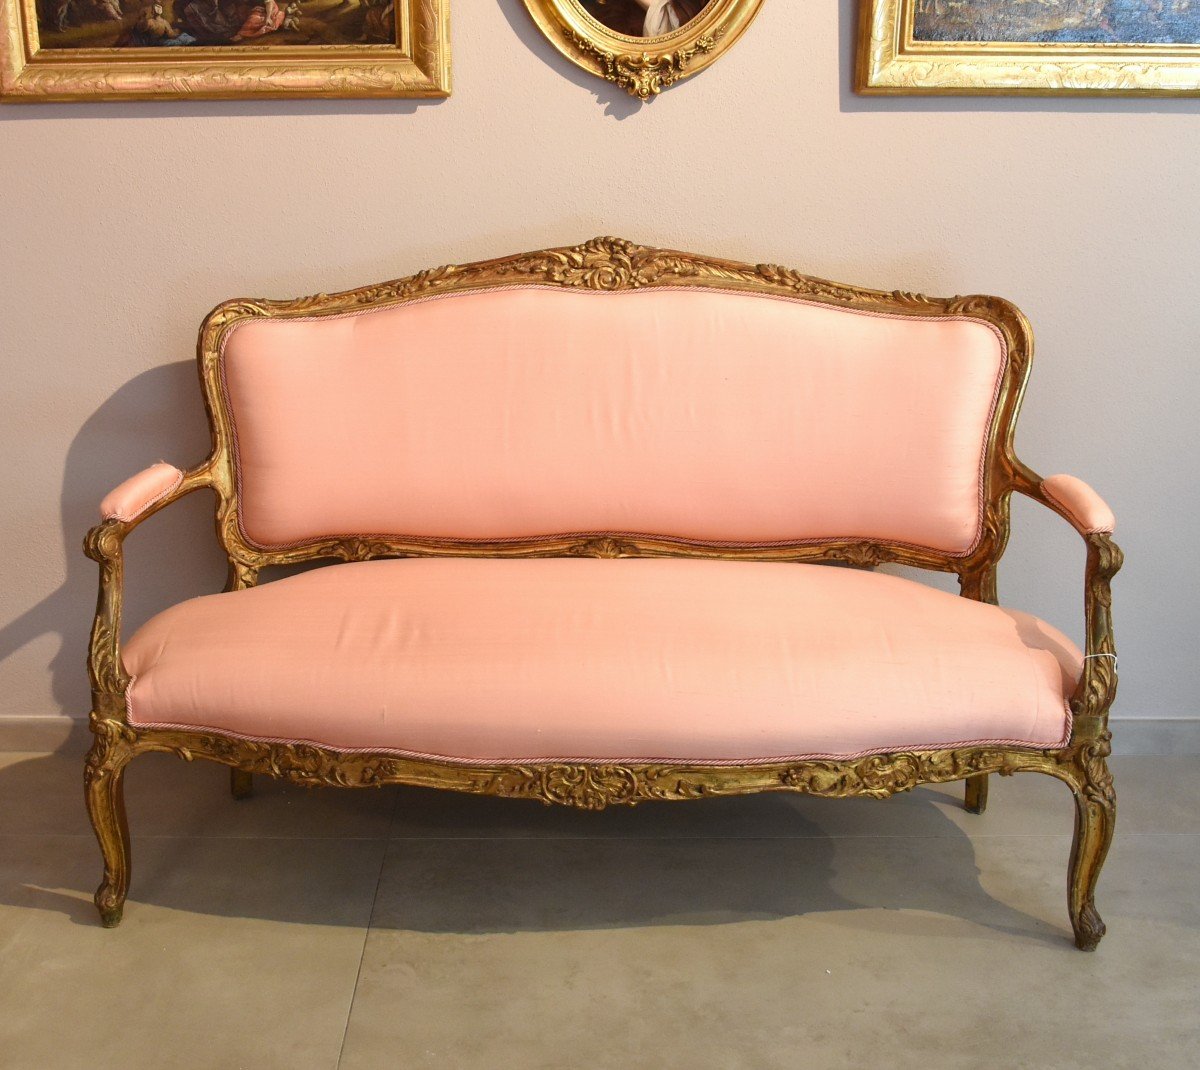 Rococo Period Sofa, France 18th Century-photo-1